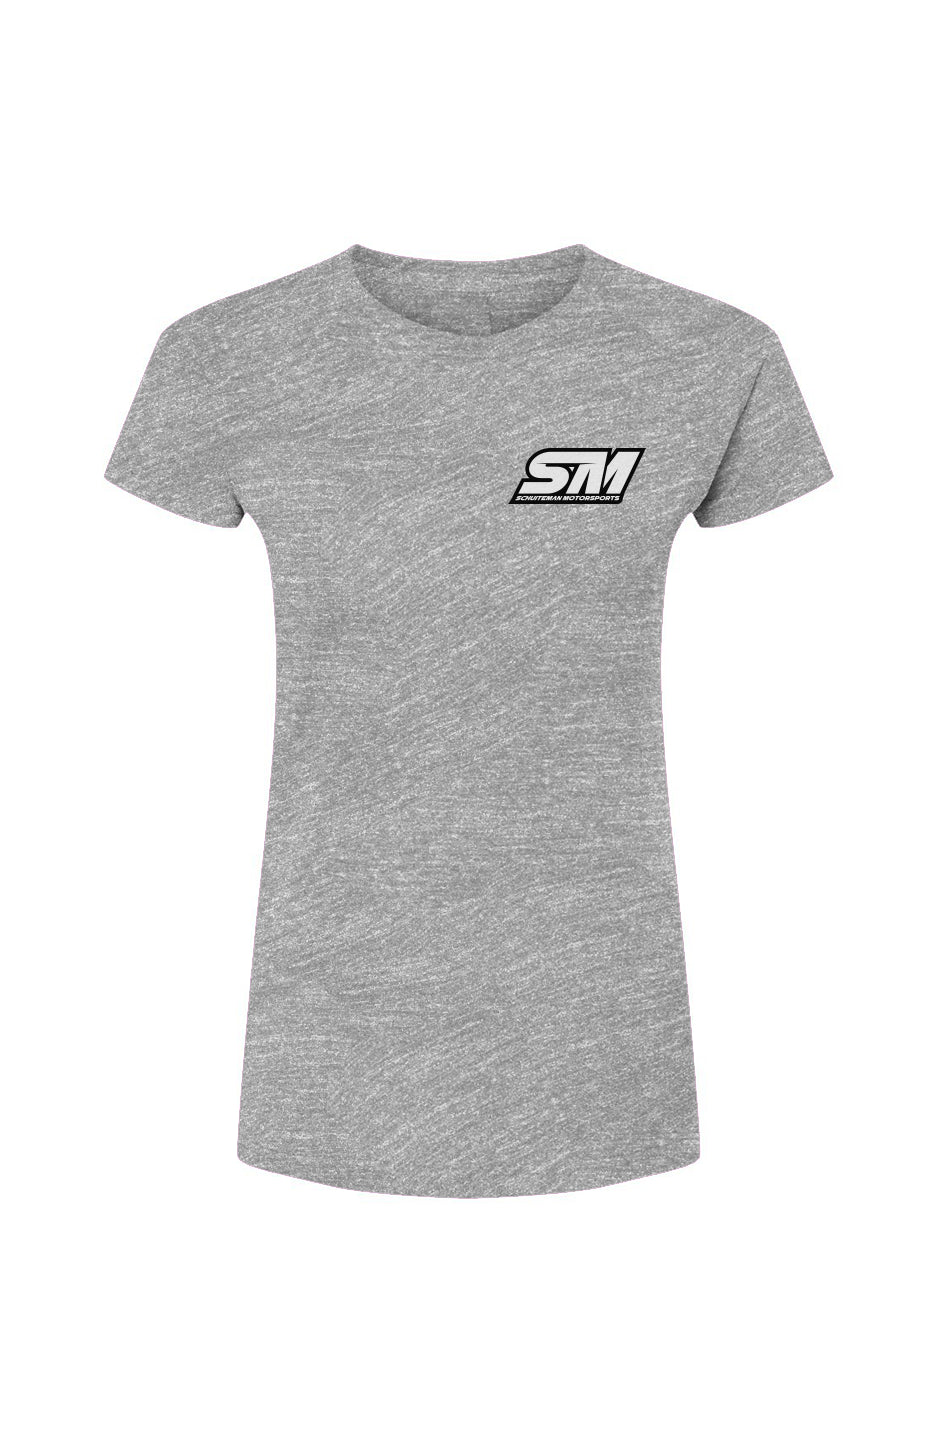 Small Logo Women's T-Shirt | Josh Schuiteman